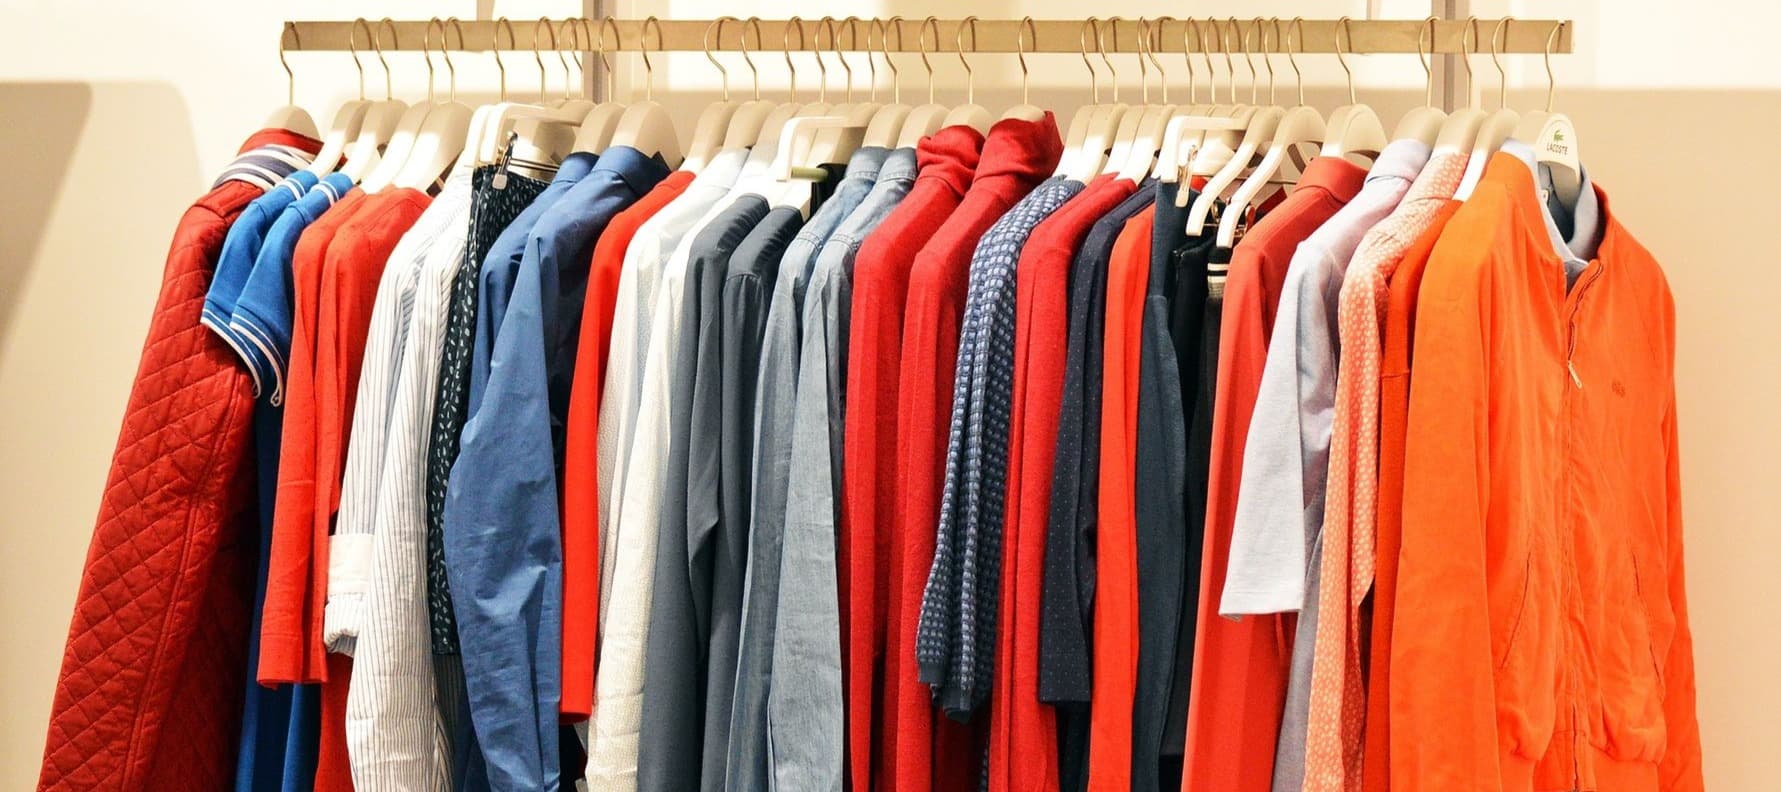 Фото новости: "Россияне снизили траты на одежду в офлайн-магазинах на 4-6%"